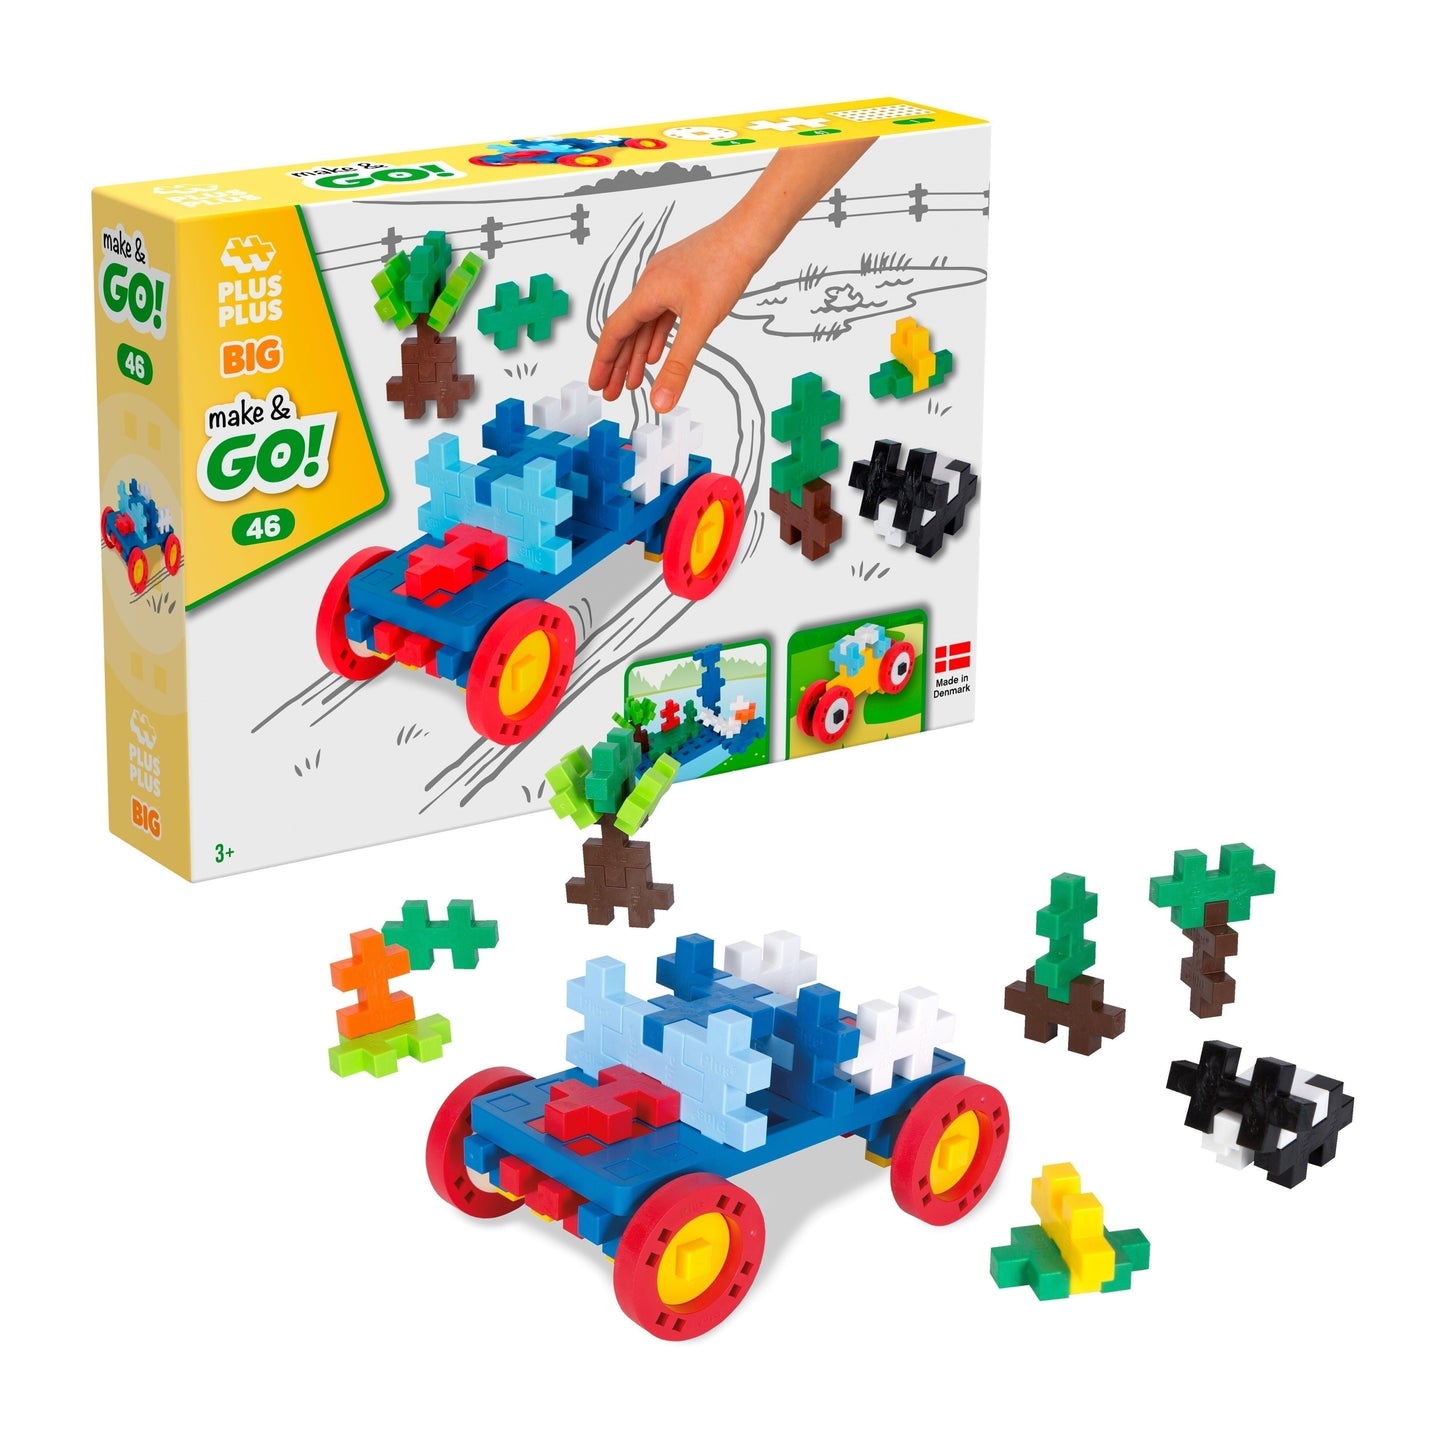 Make&GO! Véhicules - 46 Pcs - jeu de construction enfant - PLUS PLUS plus plus